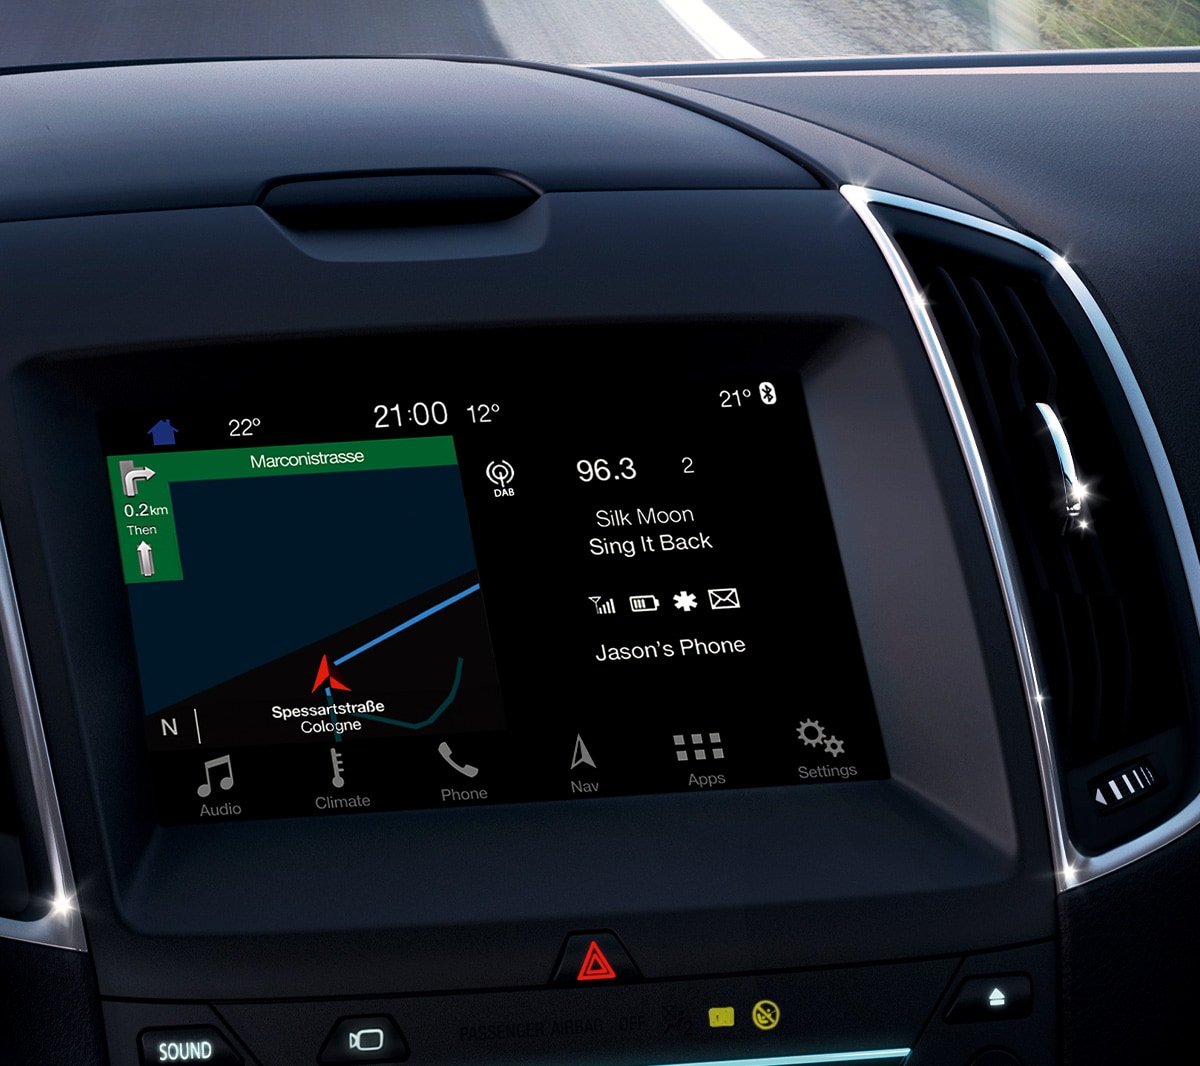 Ford Galaxy Hybrid. Detailansicht Mittelkonsole mit Touchscreen und aktiver Routenführung